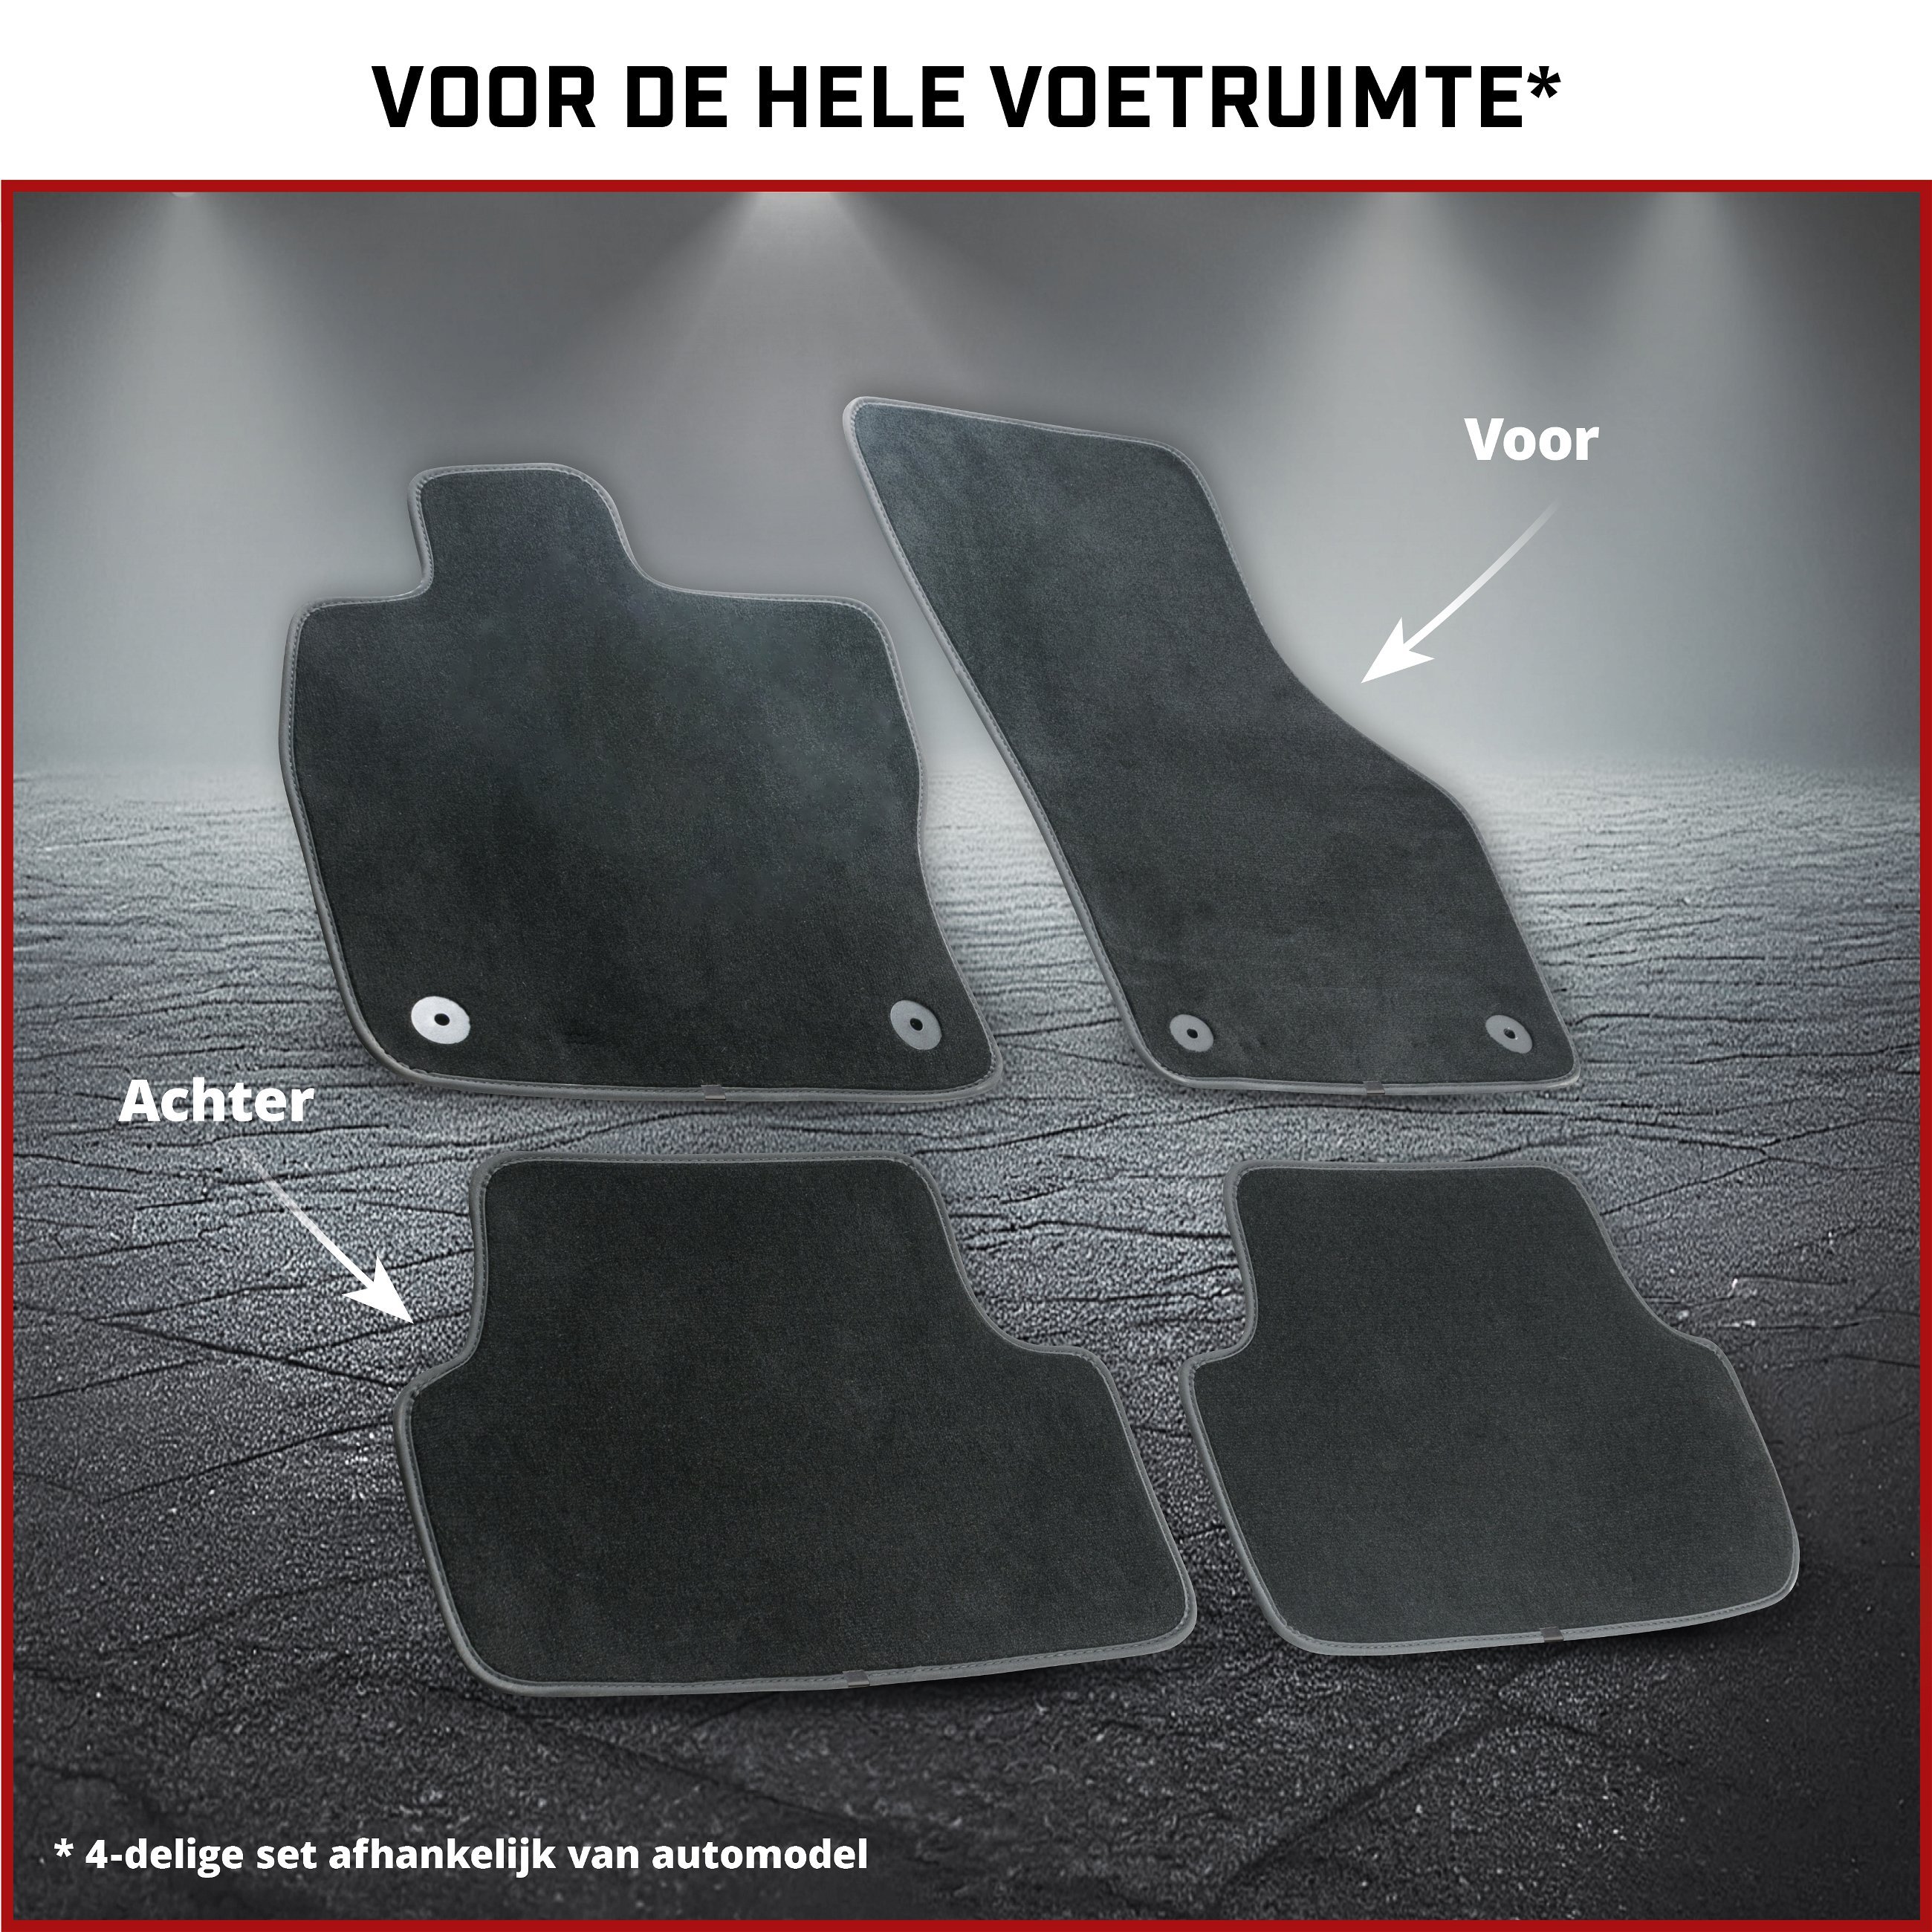 Nadelfilz Velours premium voetmatten geschikt voor VW T5 04/2003-08/2015, VW T6 04/2015-Vandaag, 3-zits